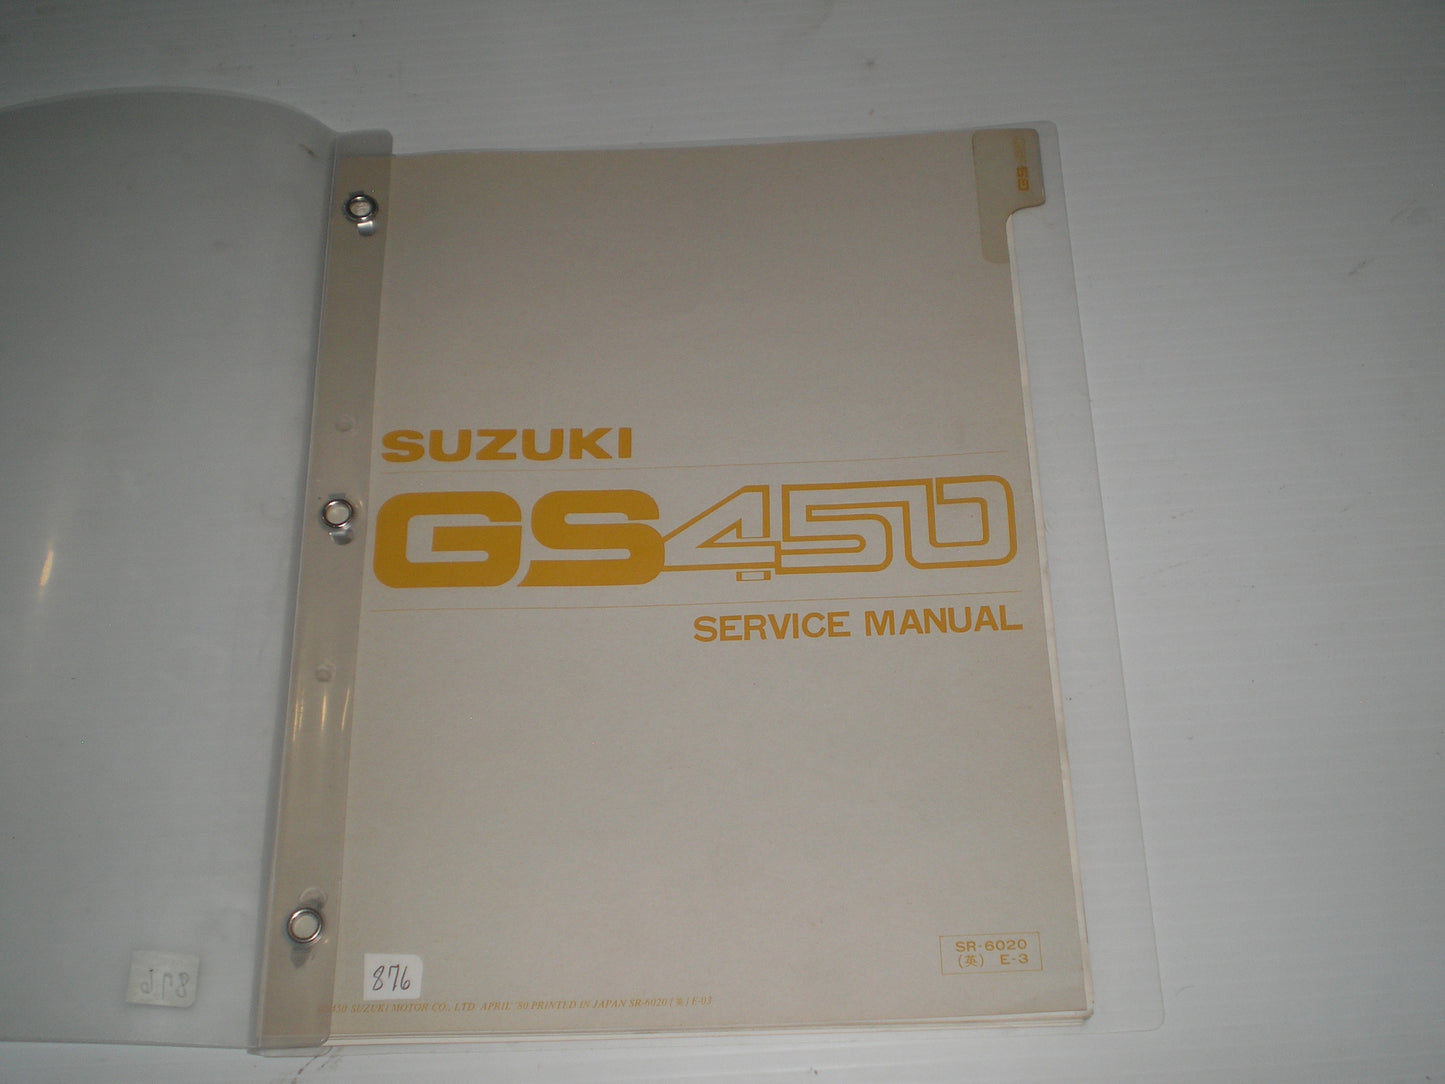 SUZUKI GS450 1980  Service Manual  SR-6020 E-3  #876